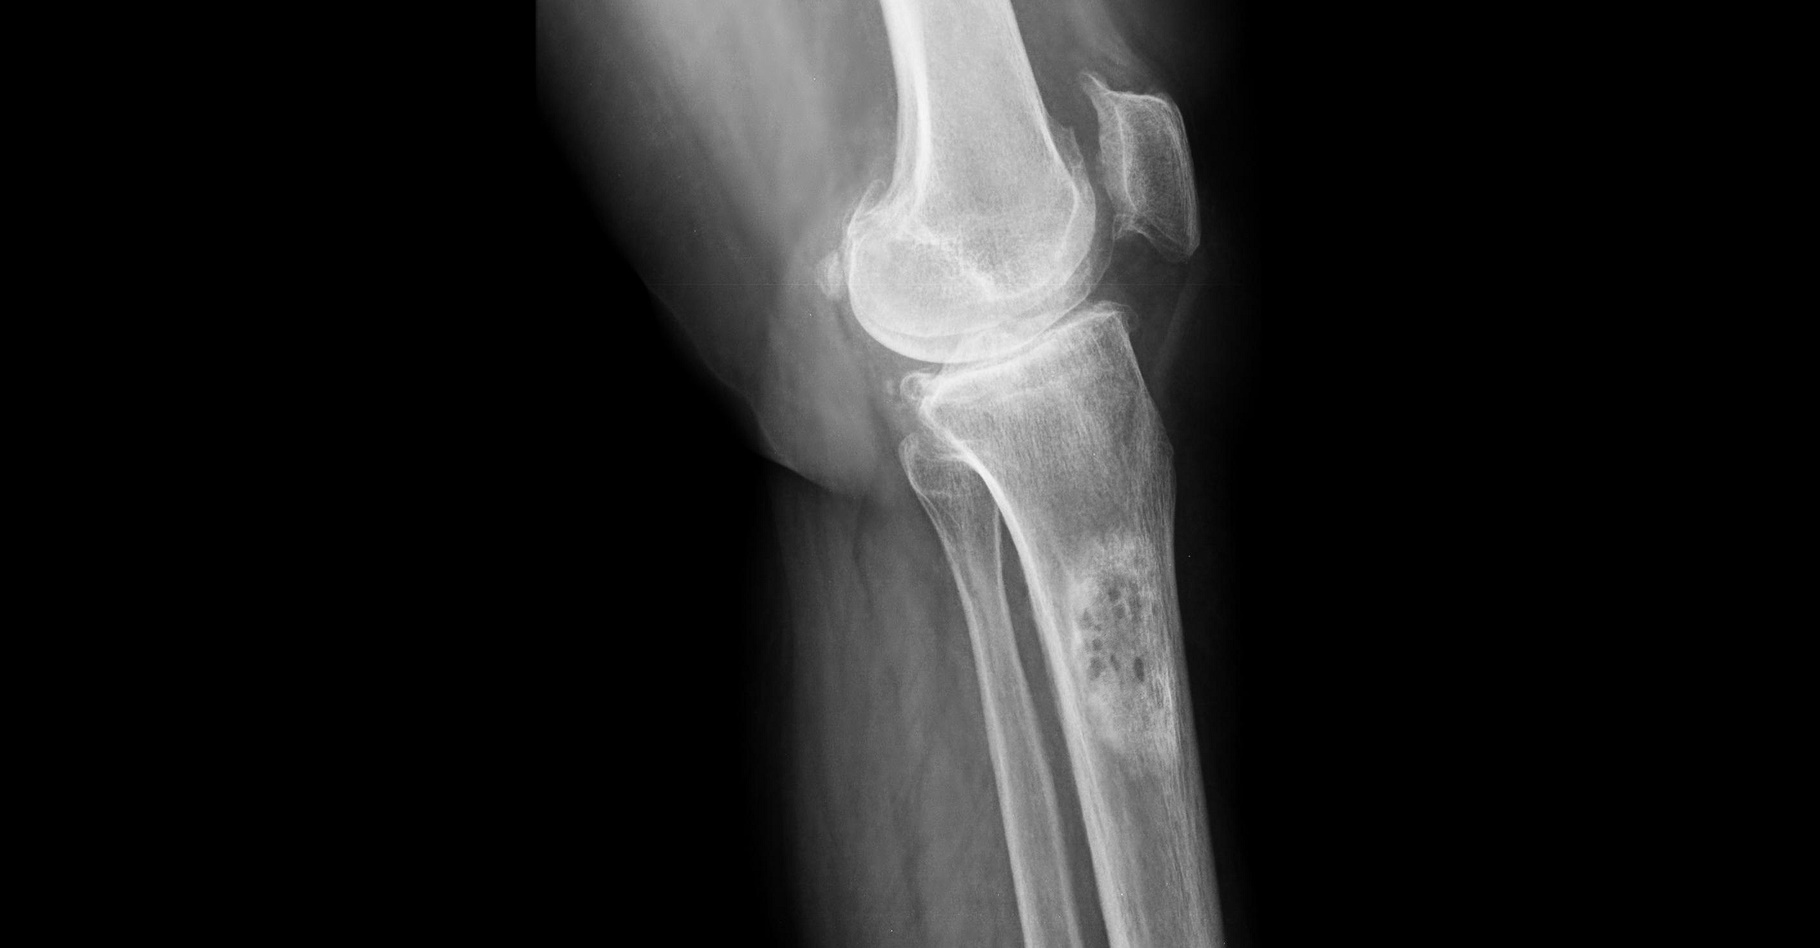 Le cancer de l'os peut être détecté par radiographie. © wonderisland, Shutterstock